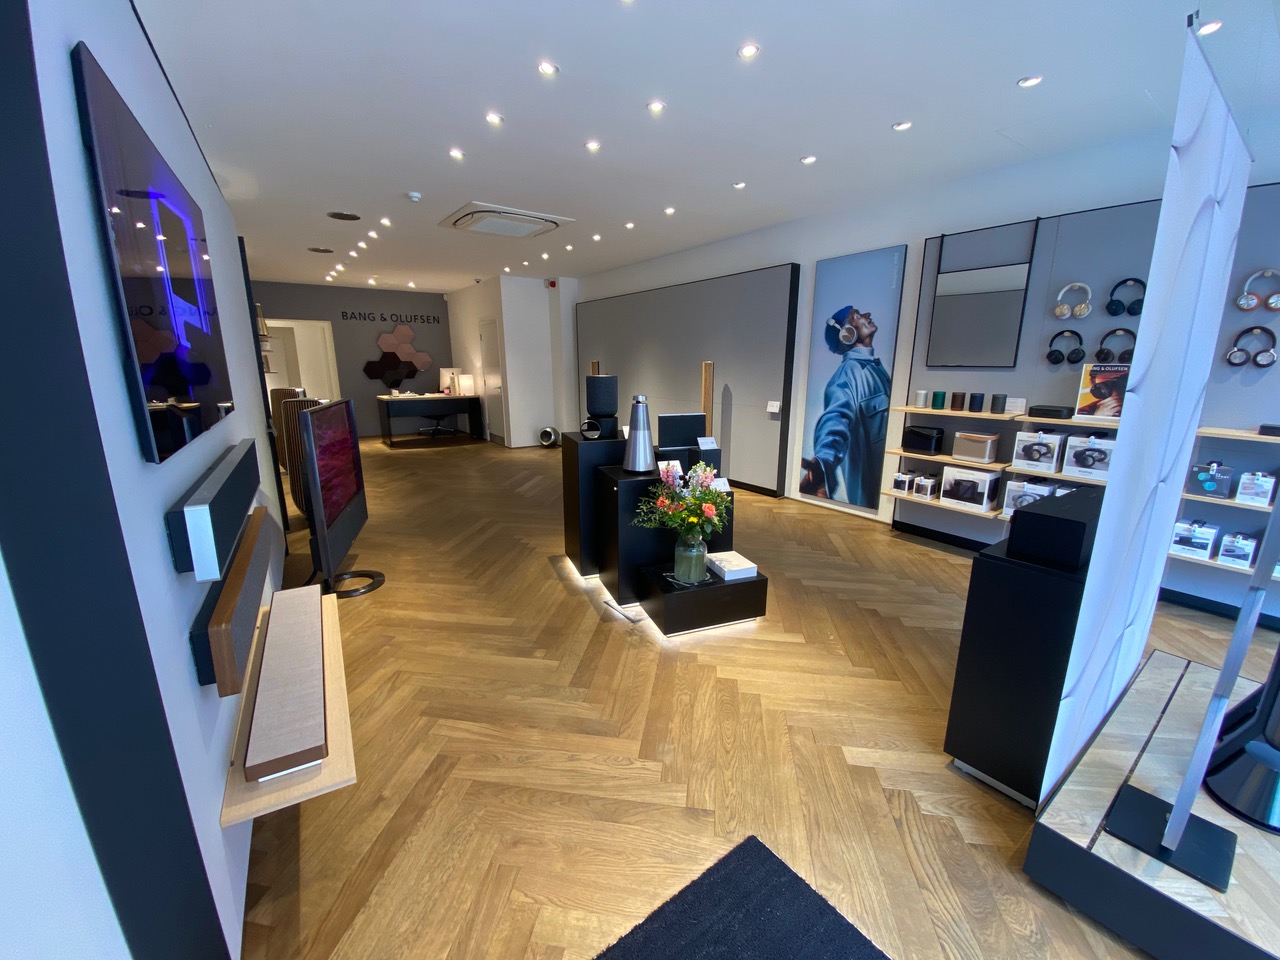 Bang & Olufsen re-opens Ealing showroom following refurbishment